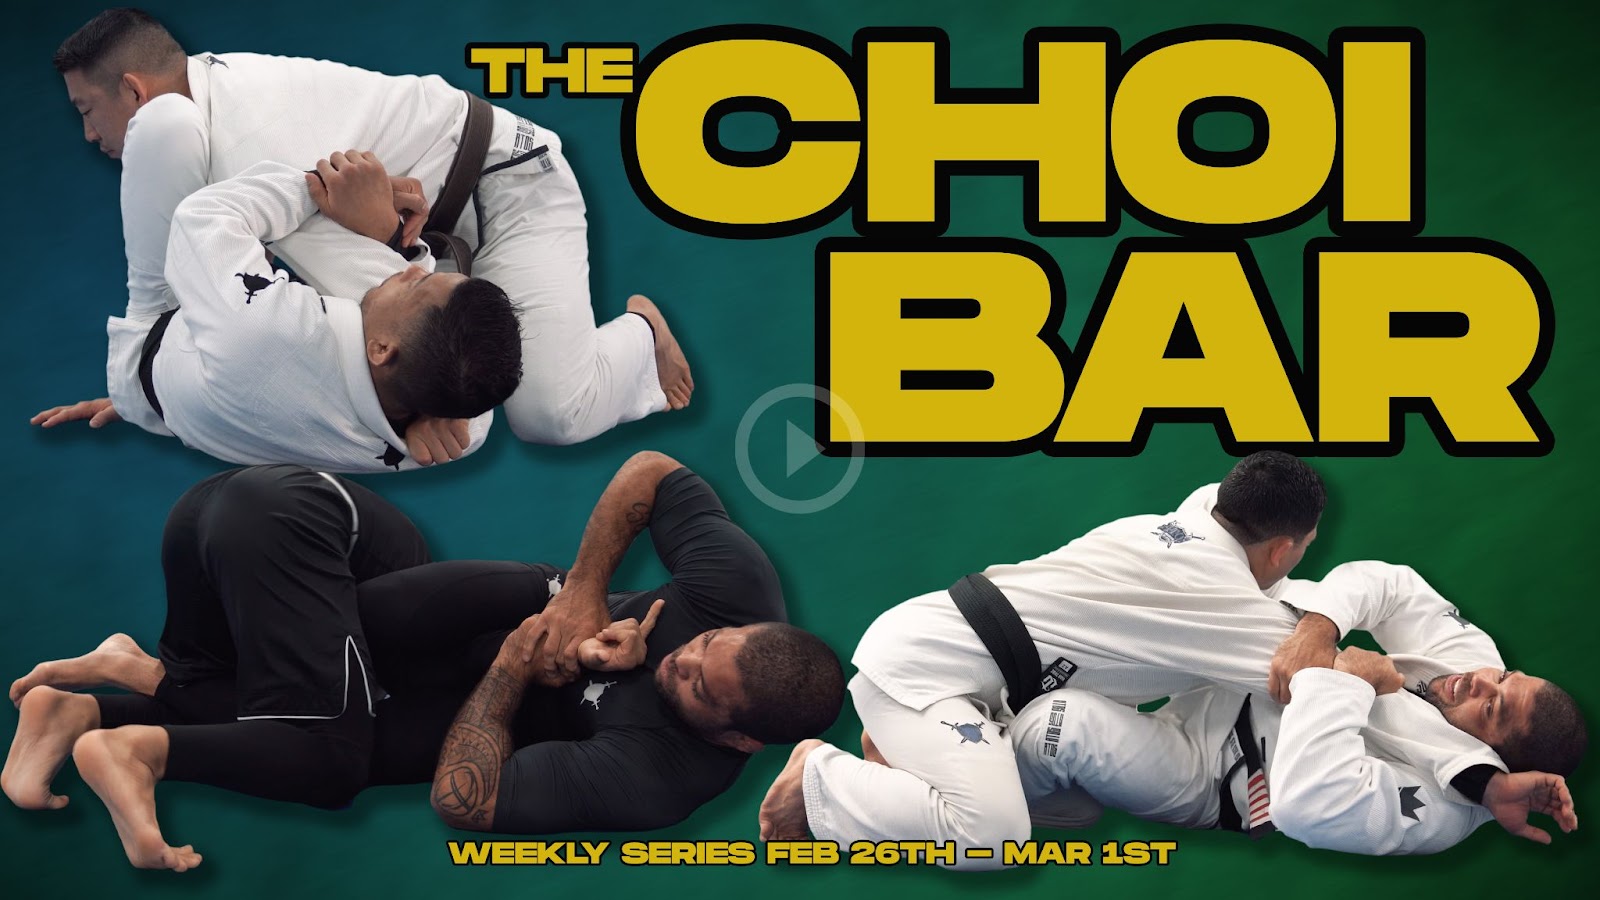 The Choi Bar series